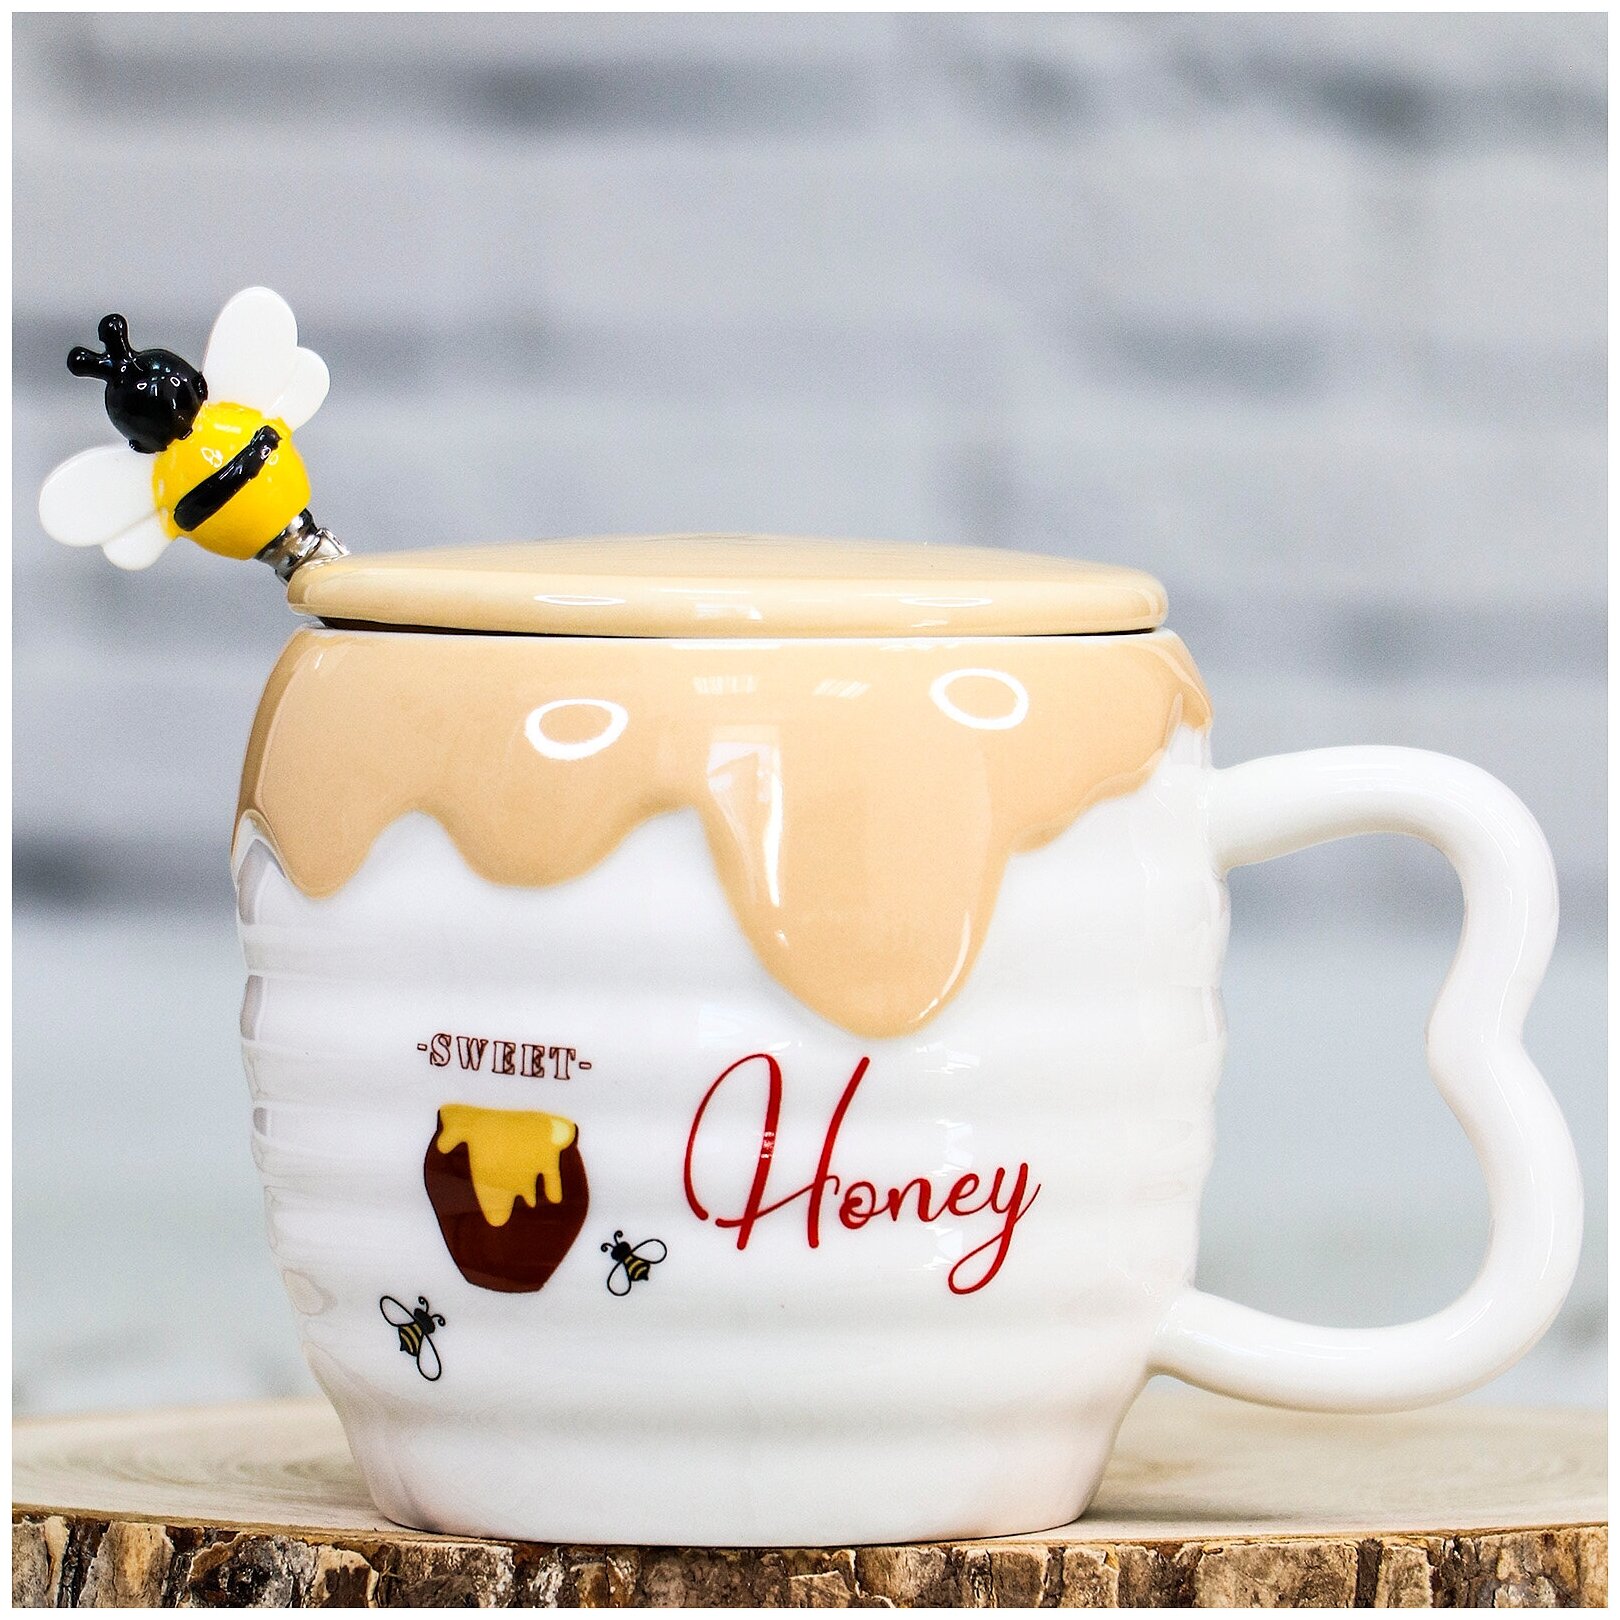 Кружка с крышкой Медовая 400 мл Эврика (N 3) чашка с ложкой женская, подарочная, чайная, кофейная "Мёд / Honey" 14 февраля, 8 марта